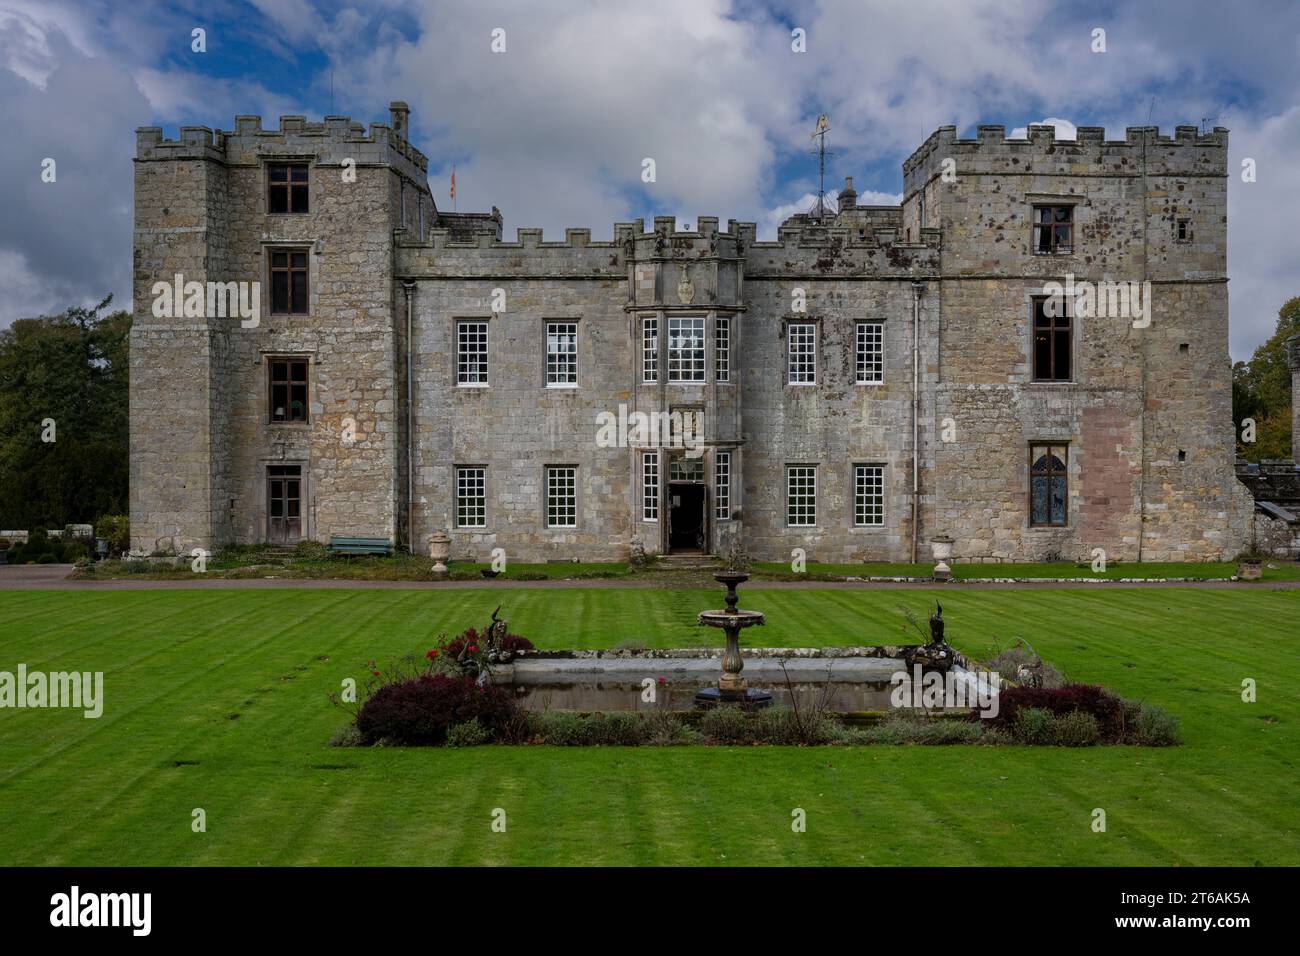 Chillingham Castle, Chillingham, Northumberland, England, UK. Stock Photo